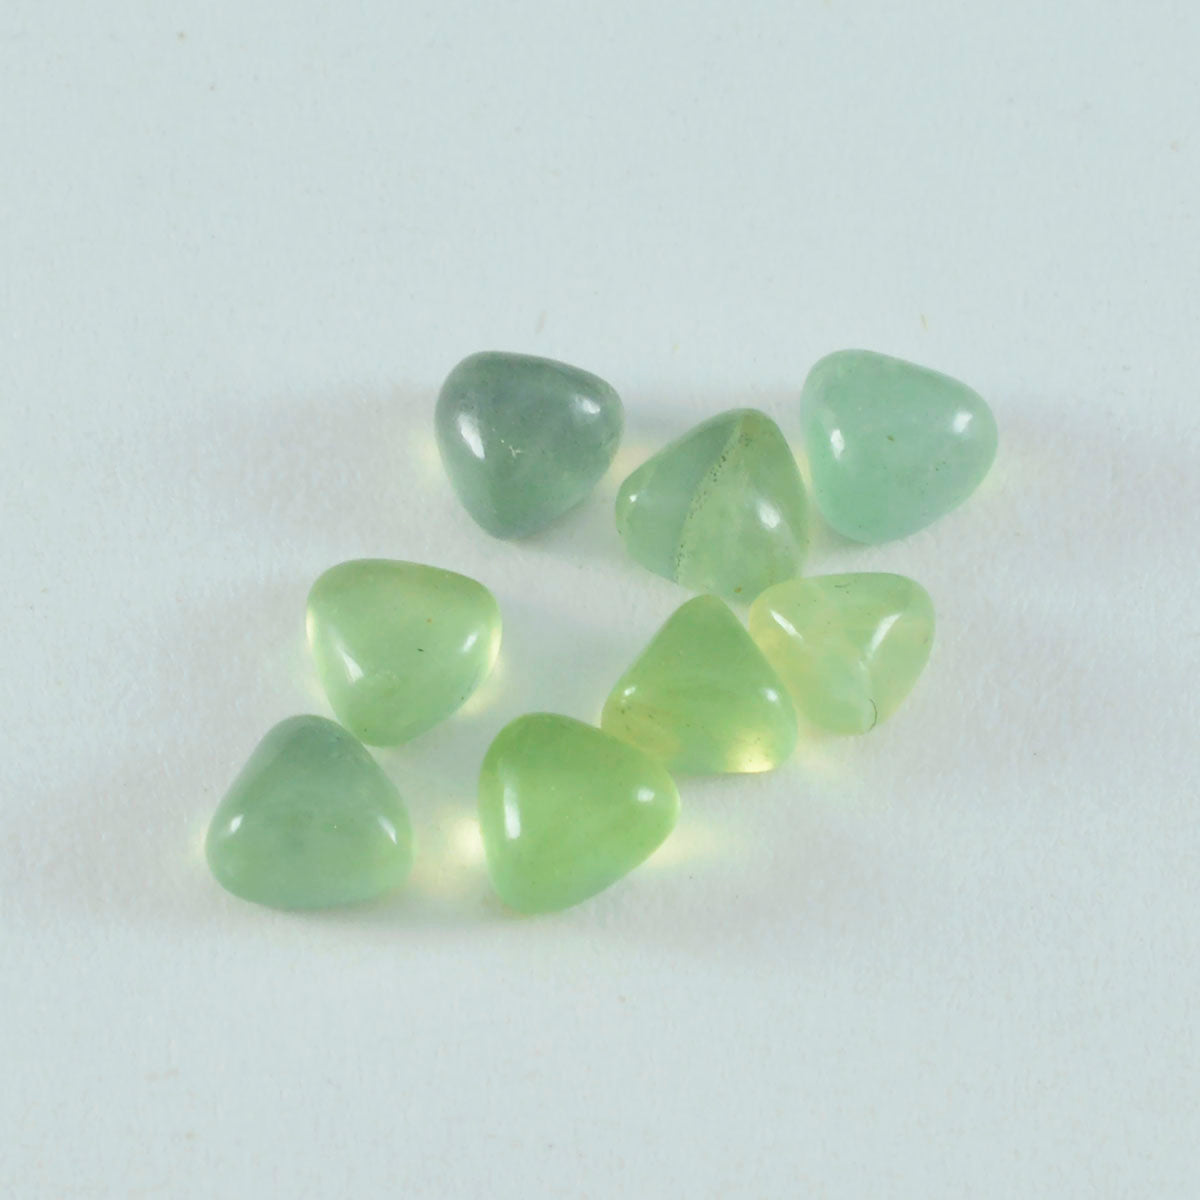 riyogems 1 шт. зеленый пренит кабошон 9x9 мм форма триллиона красивый качественный камень